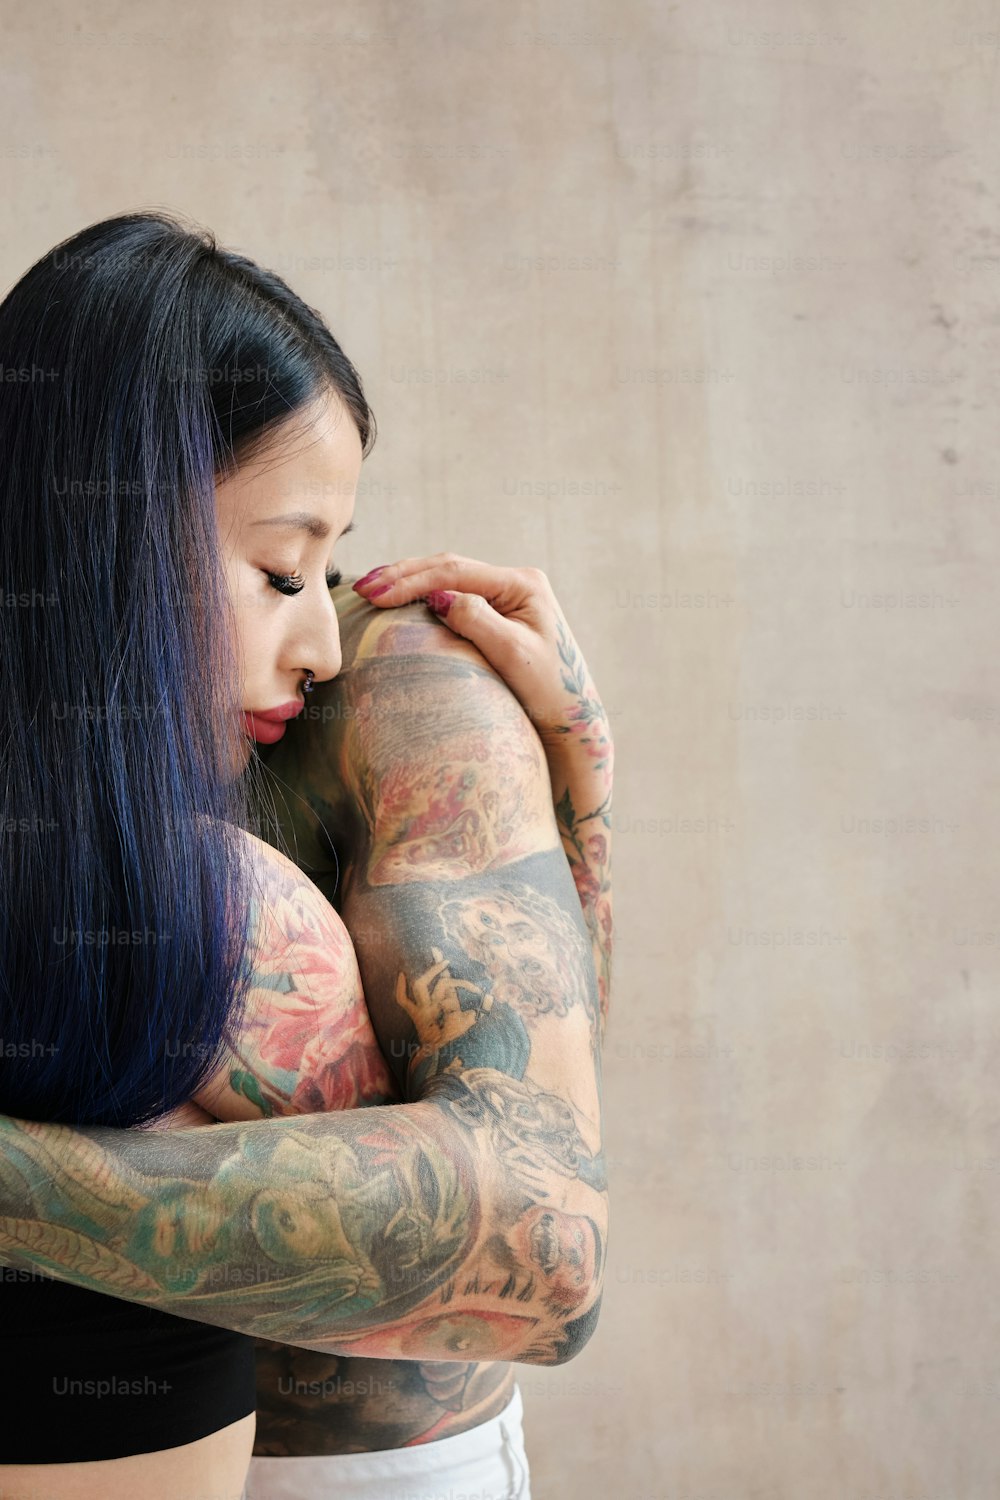 Eine Frau mit vielen Tattoos auf den Armen